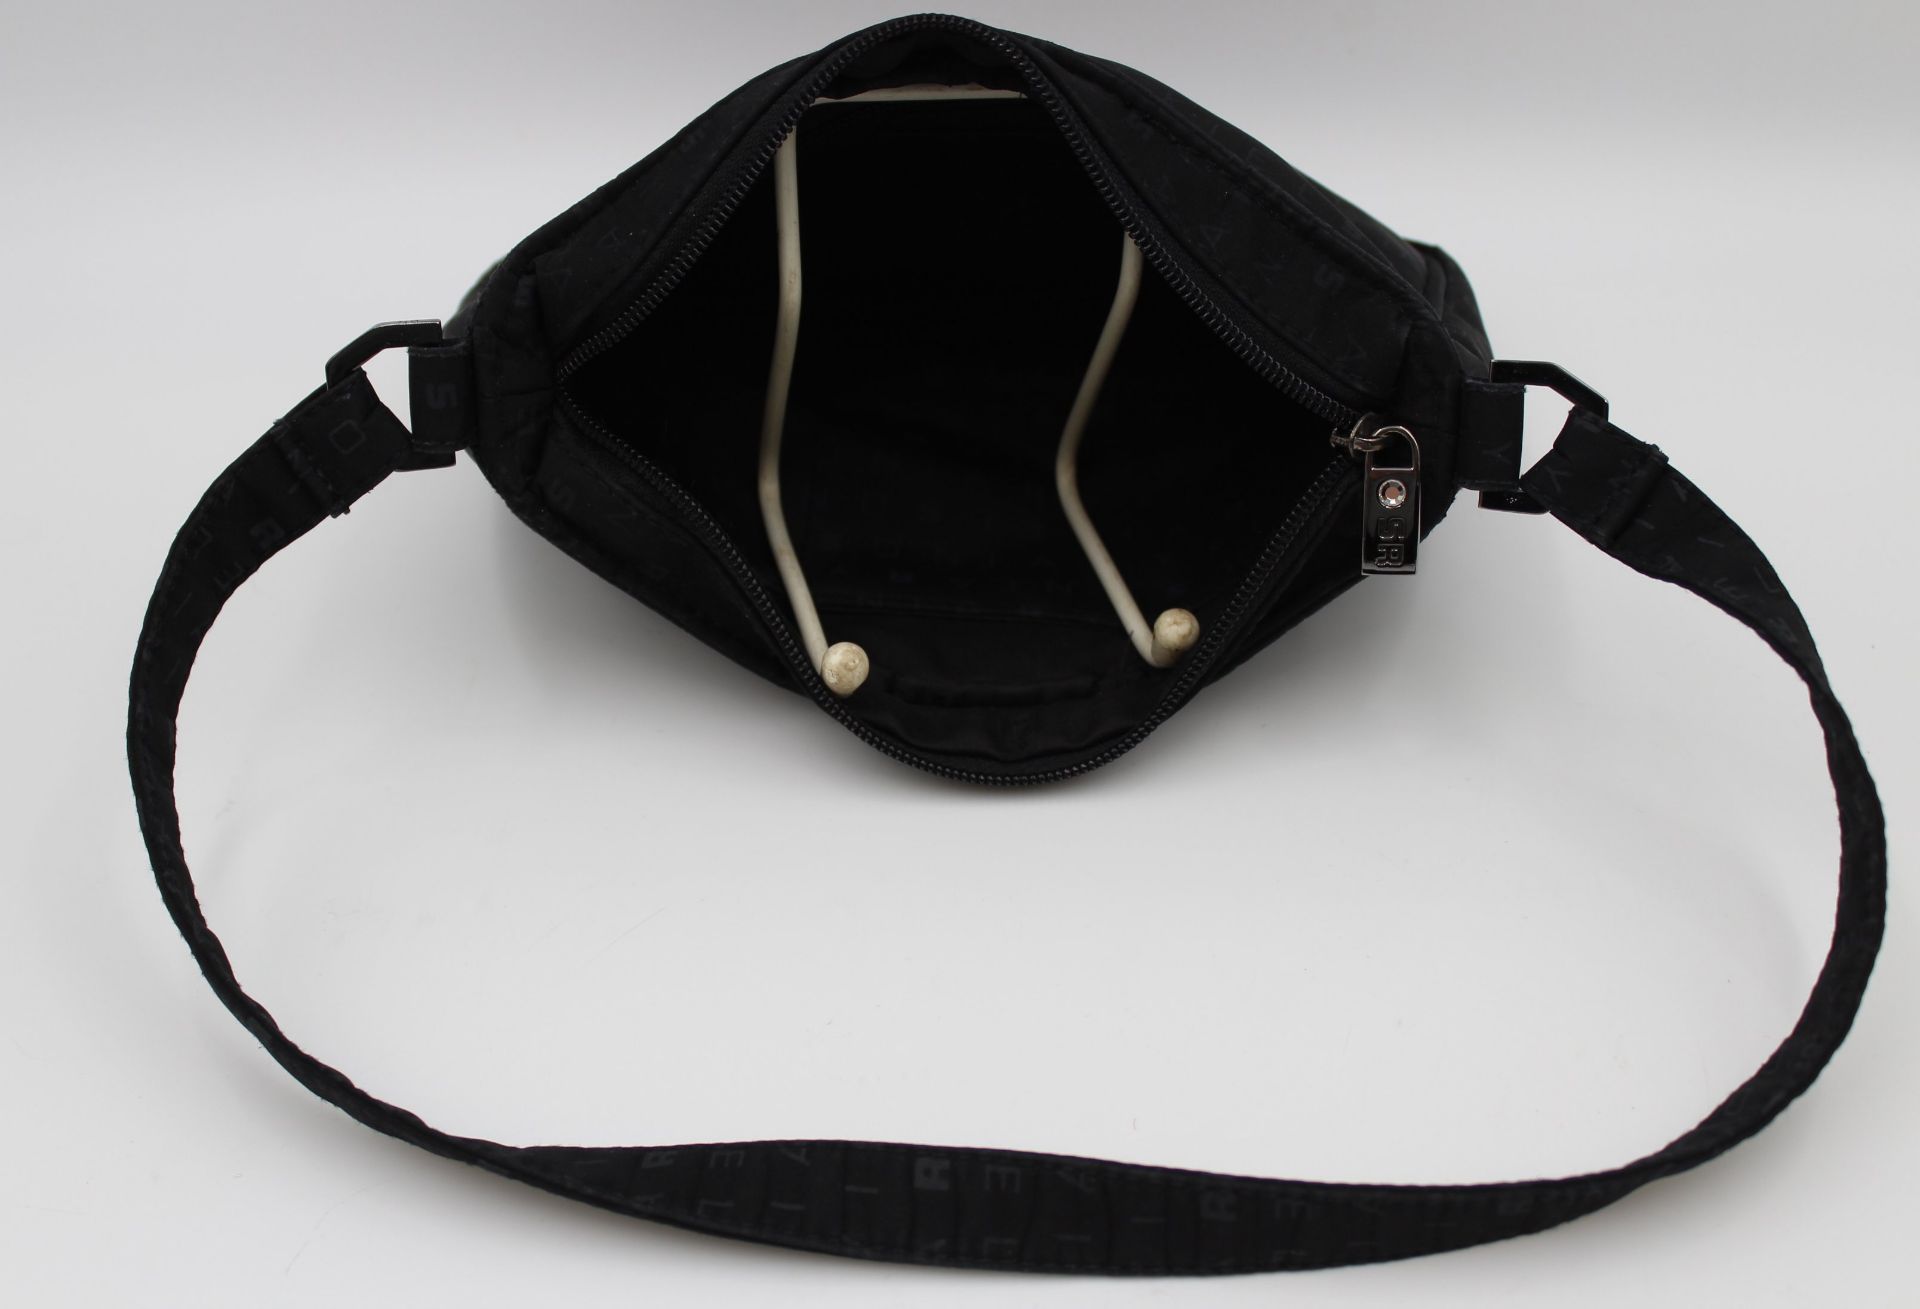 kl. Handtasche, Sonia Rykiel, schwarz, Tragespuren, ca. 14 x 22cm. - Bild 4 aus 6